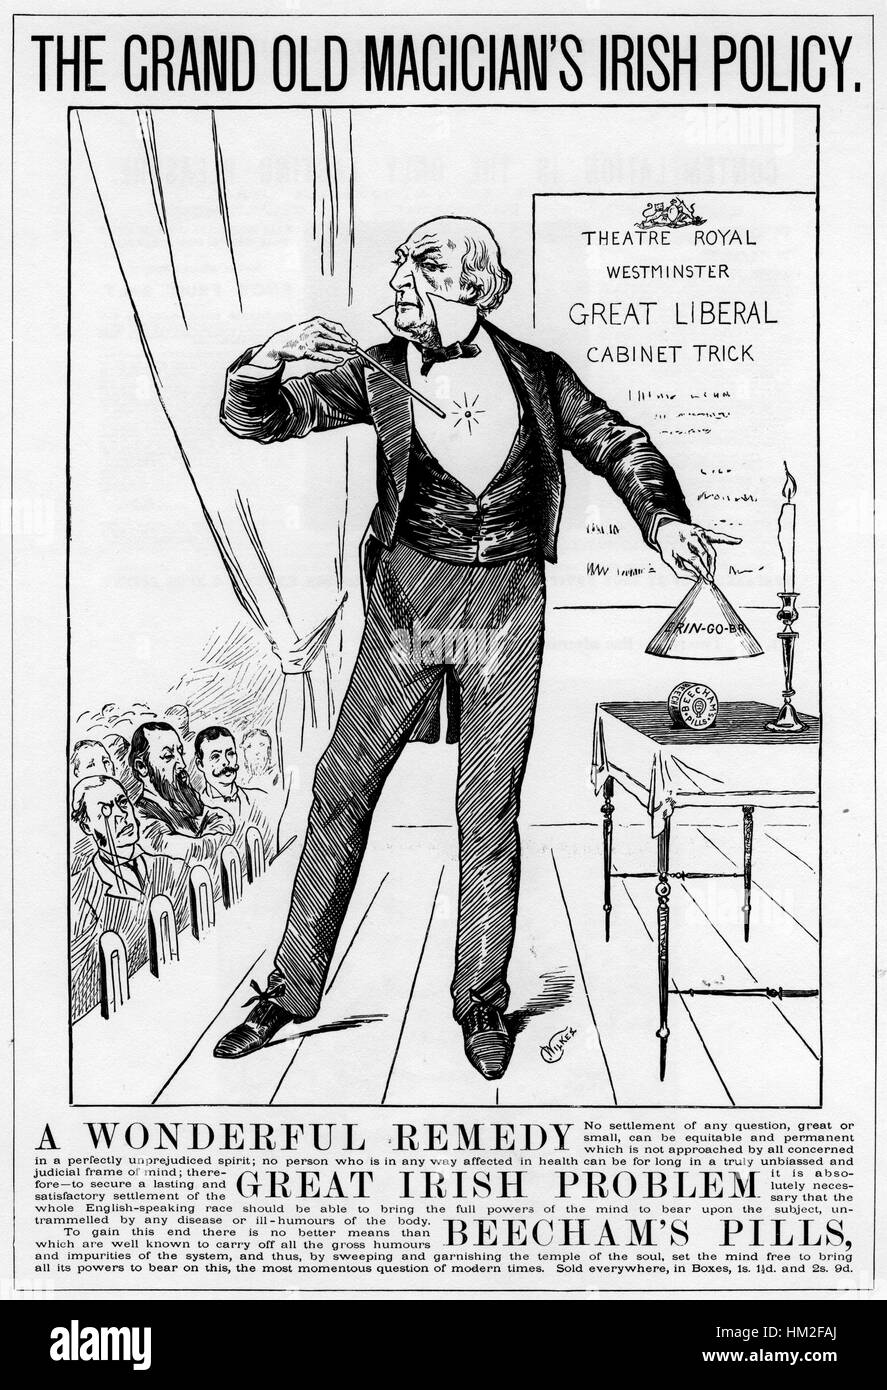 BEECHAMS Pillen eine 1886-Anzeige in der Illustrated London News Krawatten in Premierminister Gladstone, die Frage der irischen Unabhängigkeit und das Produkt, während andere Politiker sehen Stockfoto